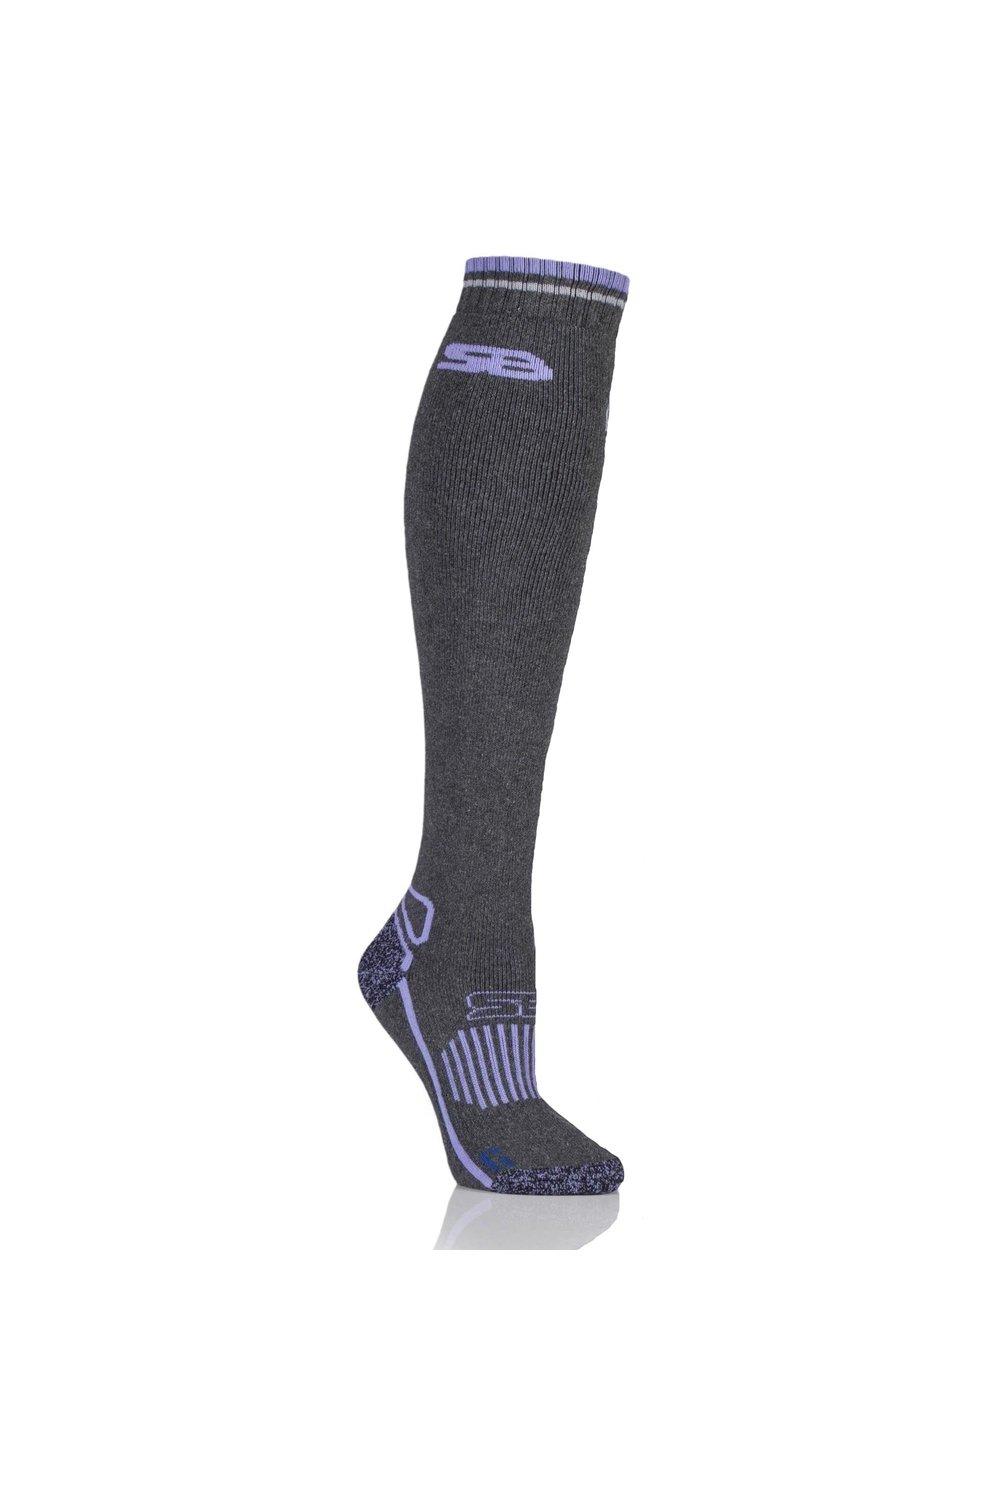 1 пара длинных шерстяных носков для конного спорта BlueGuard SOCKSHOP Storm Bloc, серый